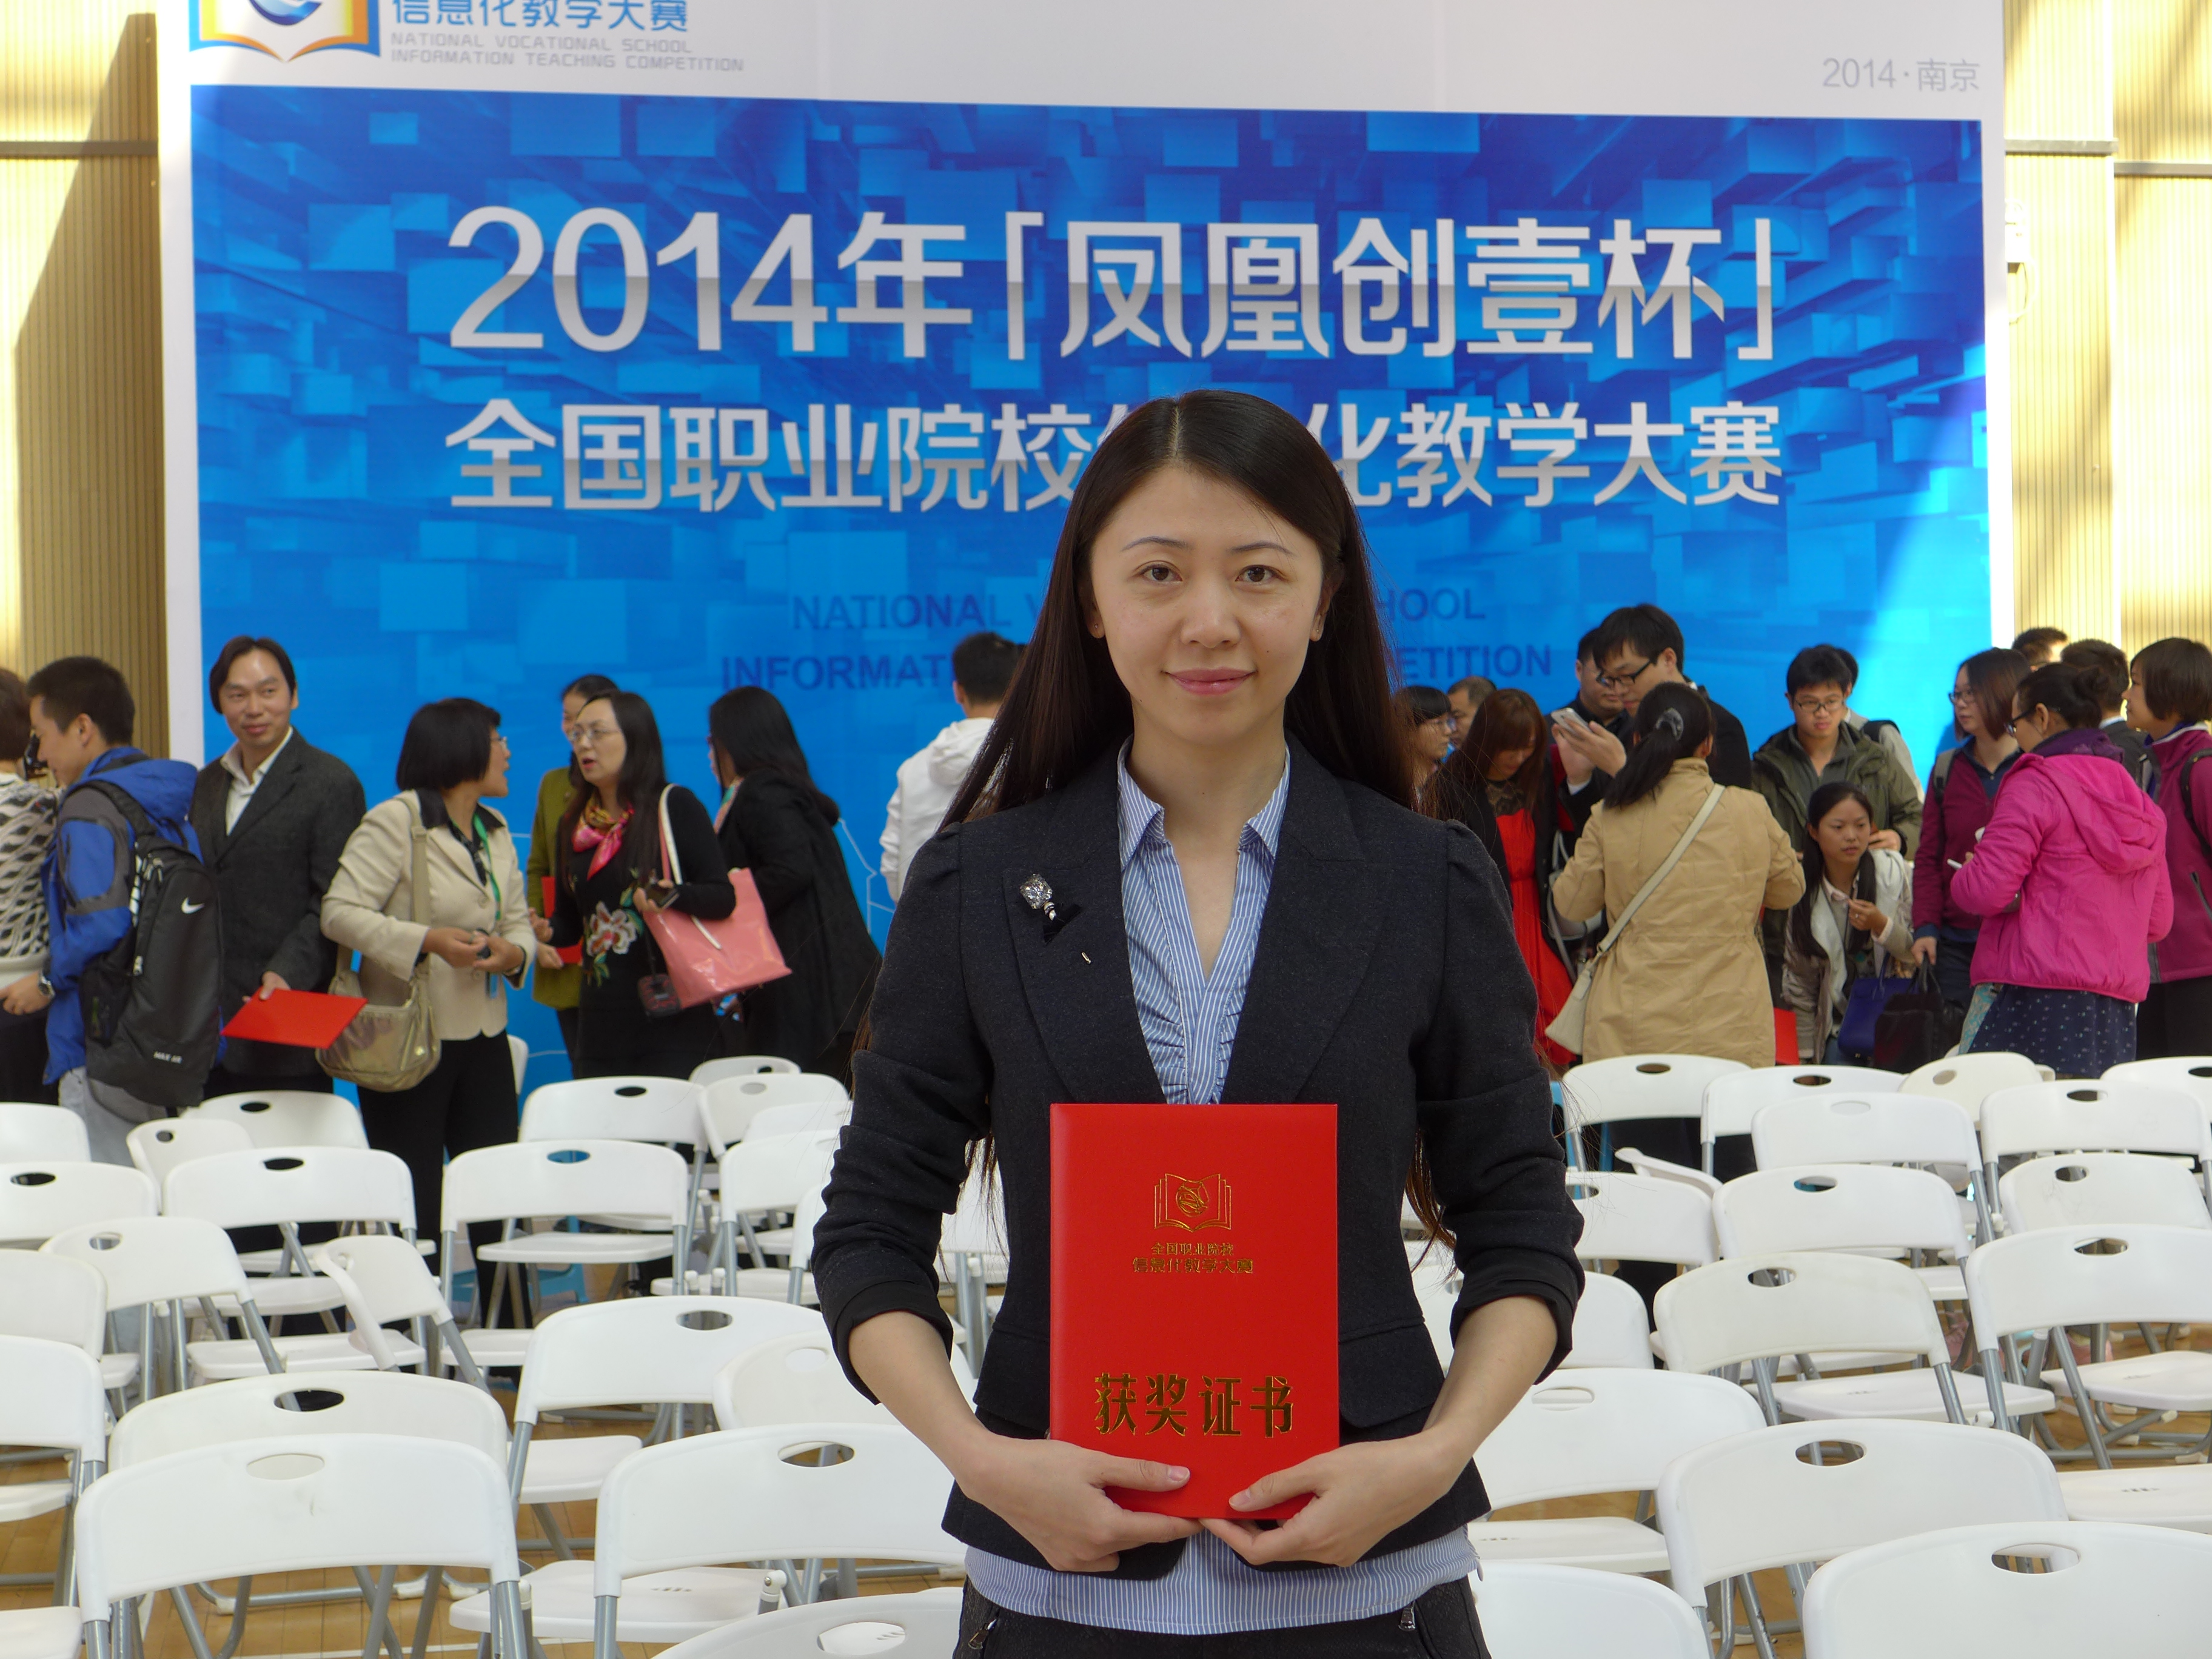 文秘专业部专业课教师张伟参加2014年全国职业院校信息化教学大赛，获教学设计比赛二等奖